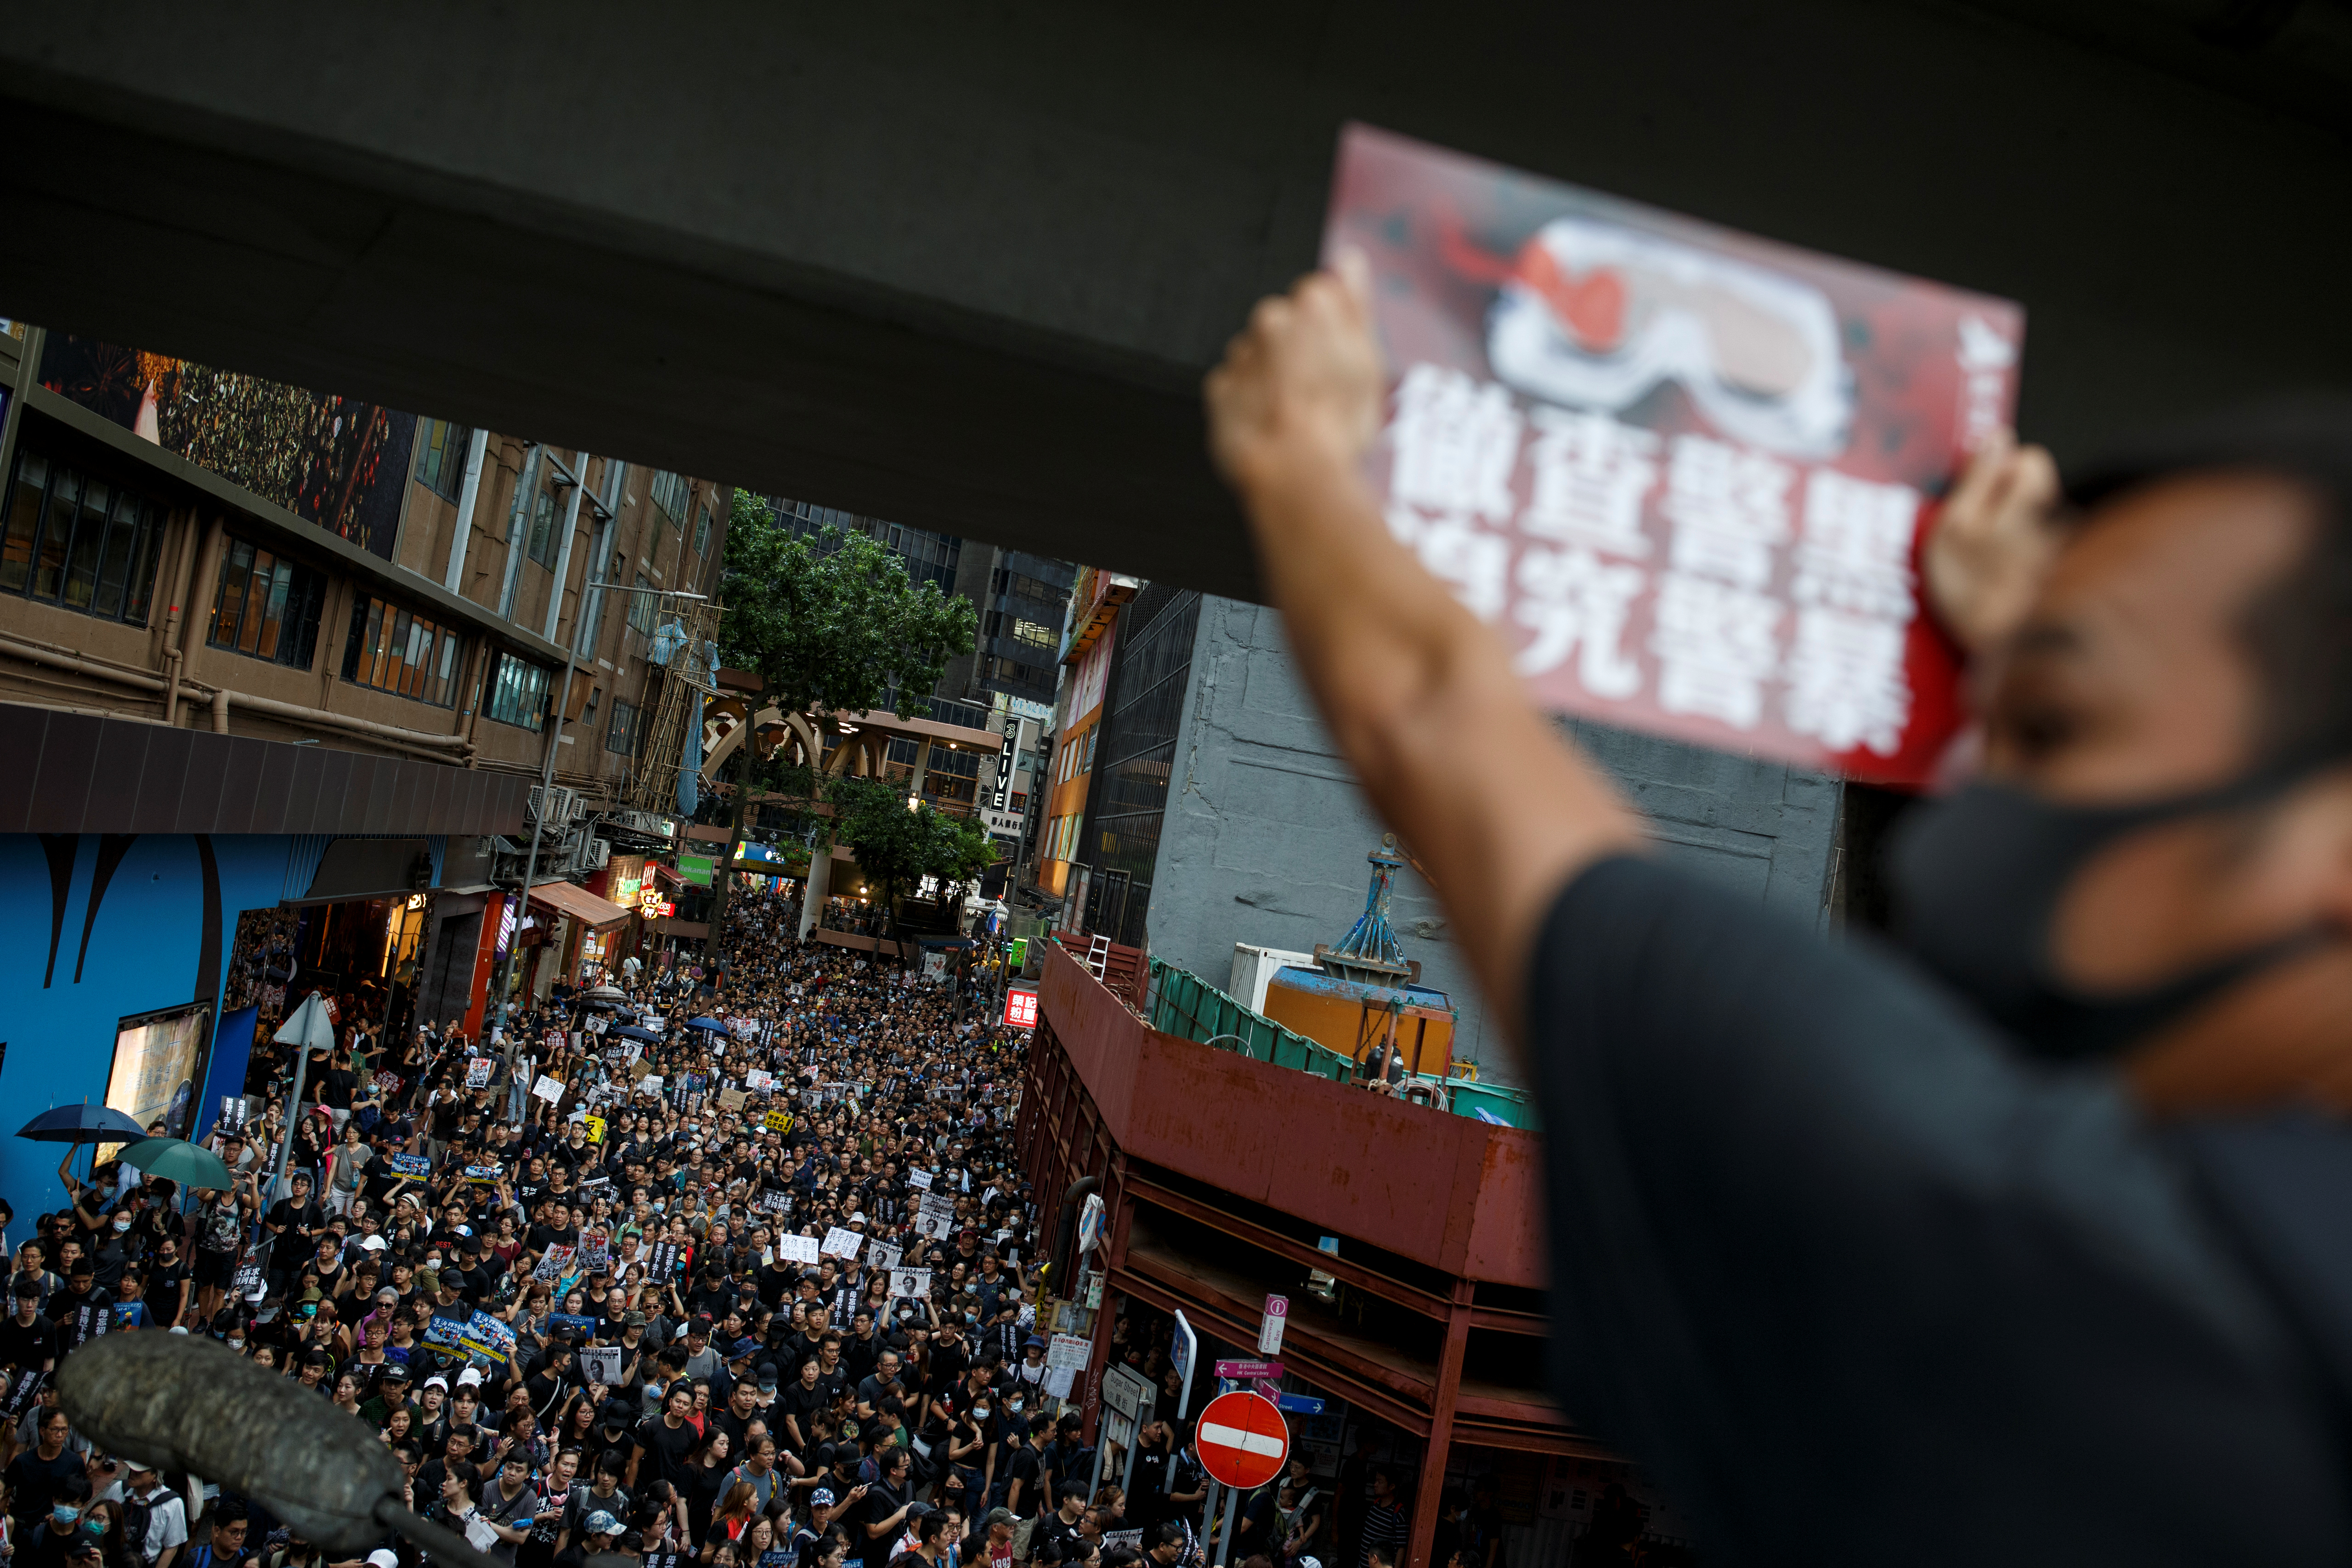 La bolsa de Hong Kong subió tras el retiro de la polémica ley de extradición (VIDEO)